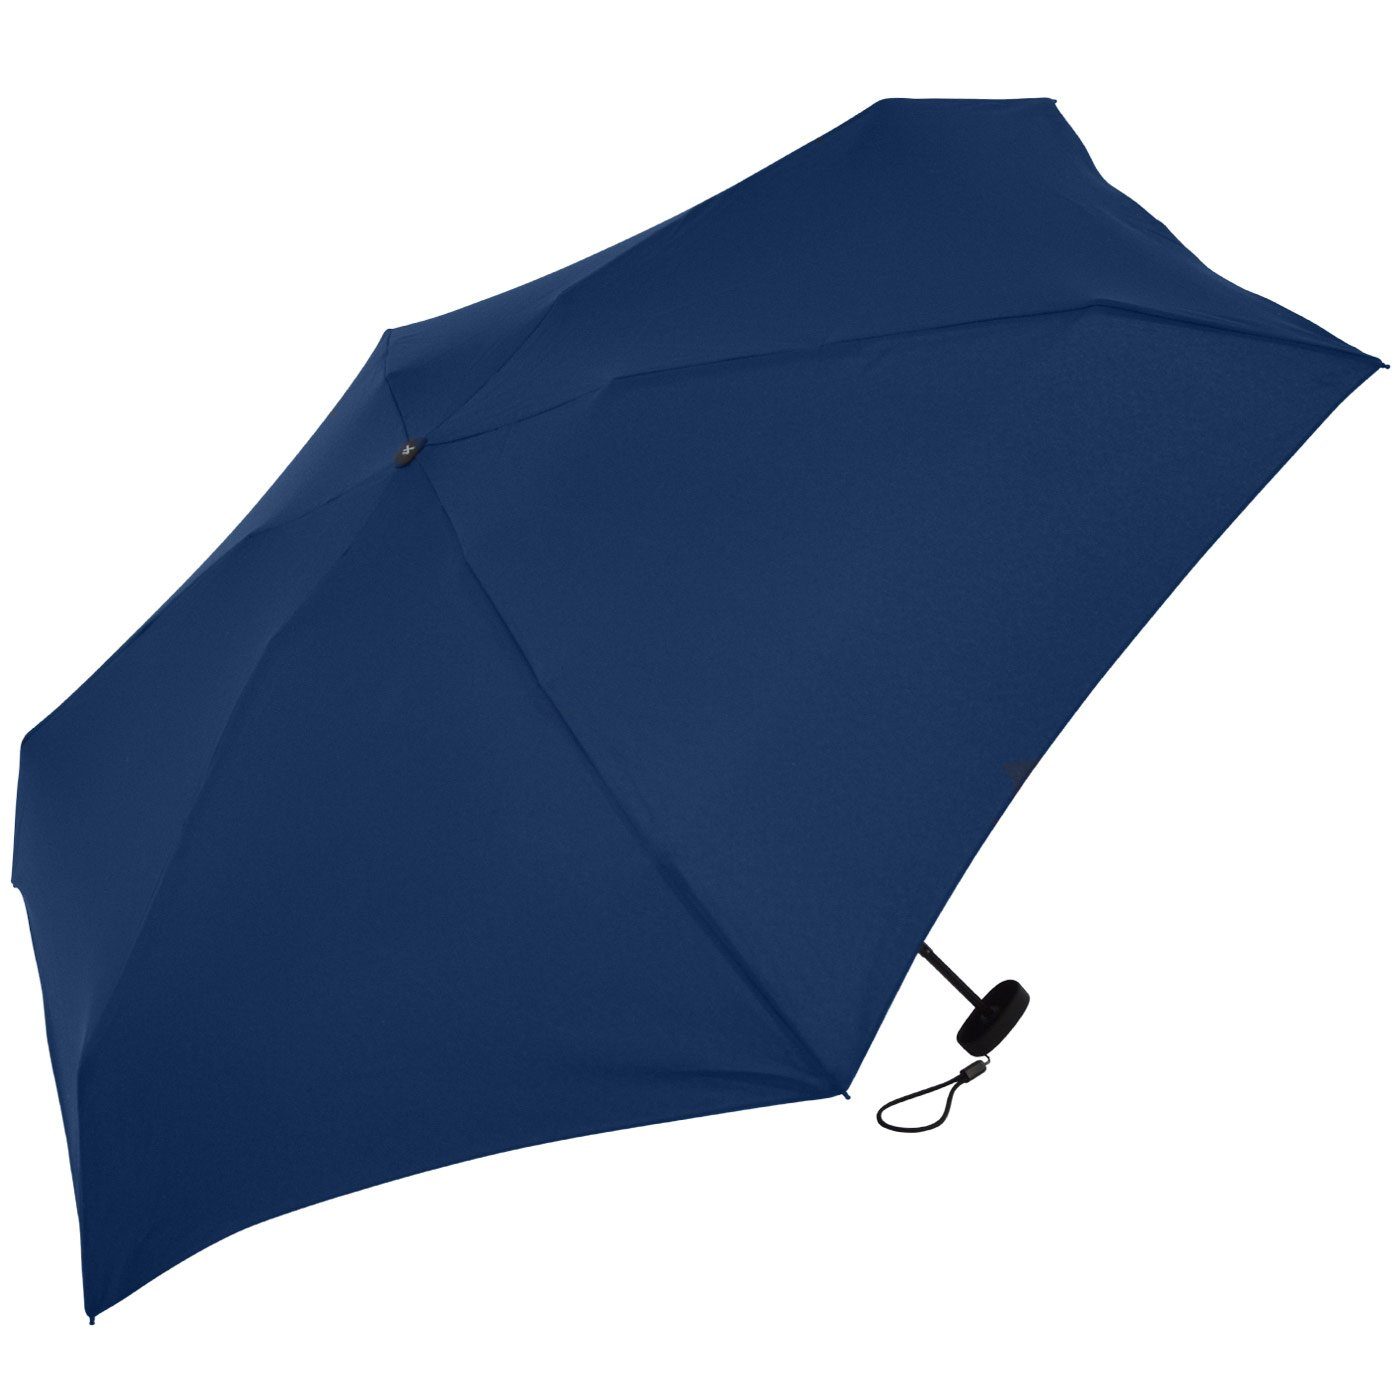 mit großem, Taschenregenschirm iX-brella Mini Super 18 94cm cm Schirm dunkelblau super-mini kleiner